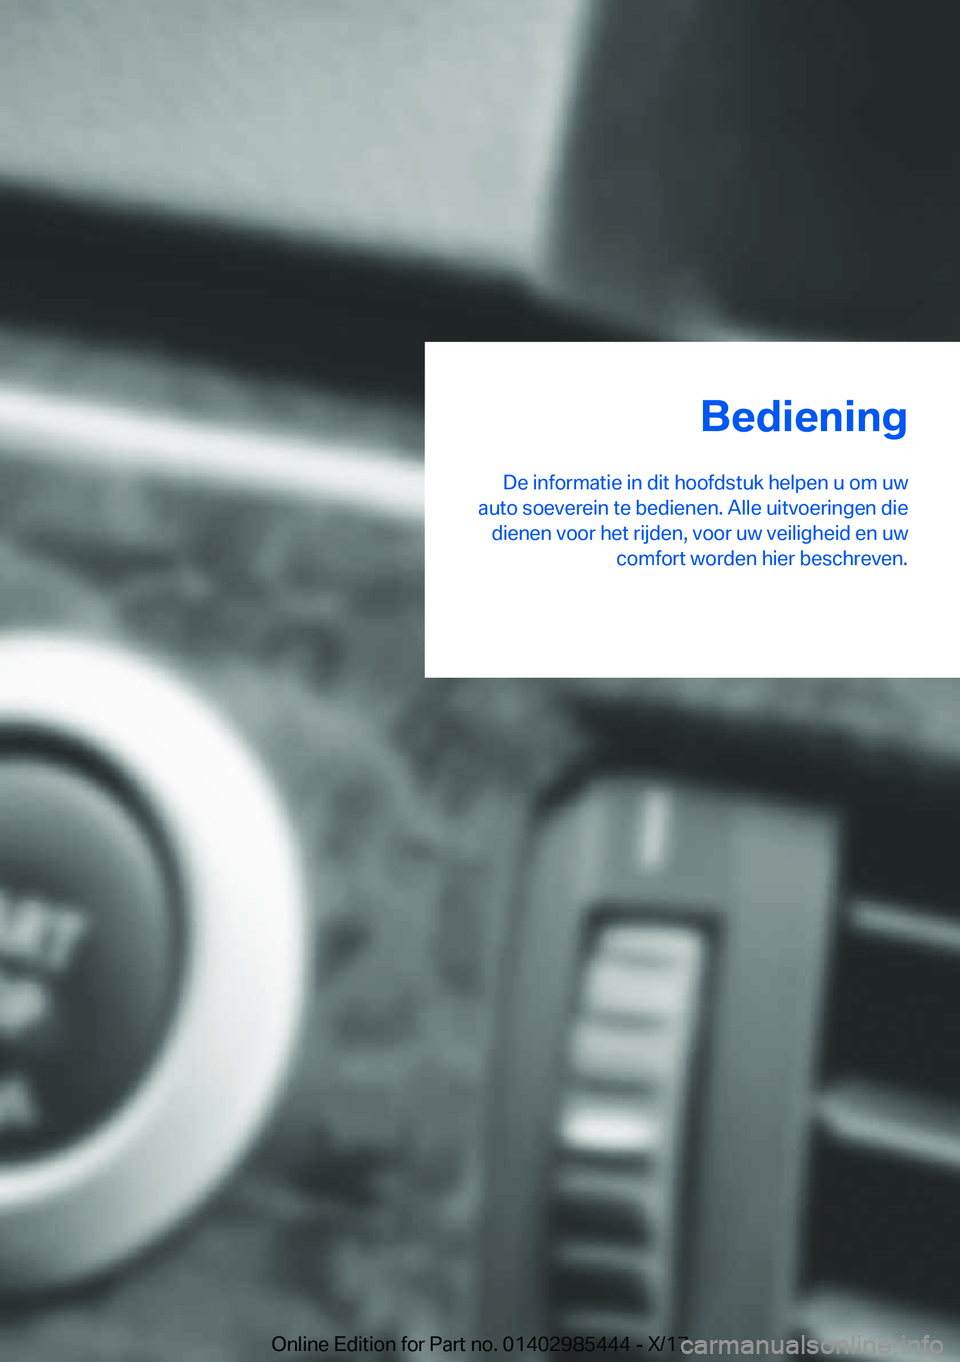 BMW X1 2018  Instructieboekjes (in Dutch) �B�e�d�i�e�n�i�n�g
�D�e� �i�n�f�o�r�m�a�t�i�e� �i�n� �d�i�t� �h�o�o�f�d�s�t�u�k� �h�e�l�p�e�n� �u� �o�m� �u�w
�a�u�t�o� �s�o�e�v�e�r�e�i�n� �t�e� �b�e�d�i�e�n�e�n�.� �A�l�l�e� �u�i�t�v�o�e�r�i�n�g�e�n